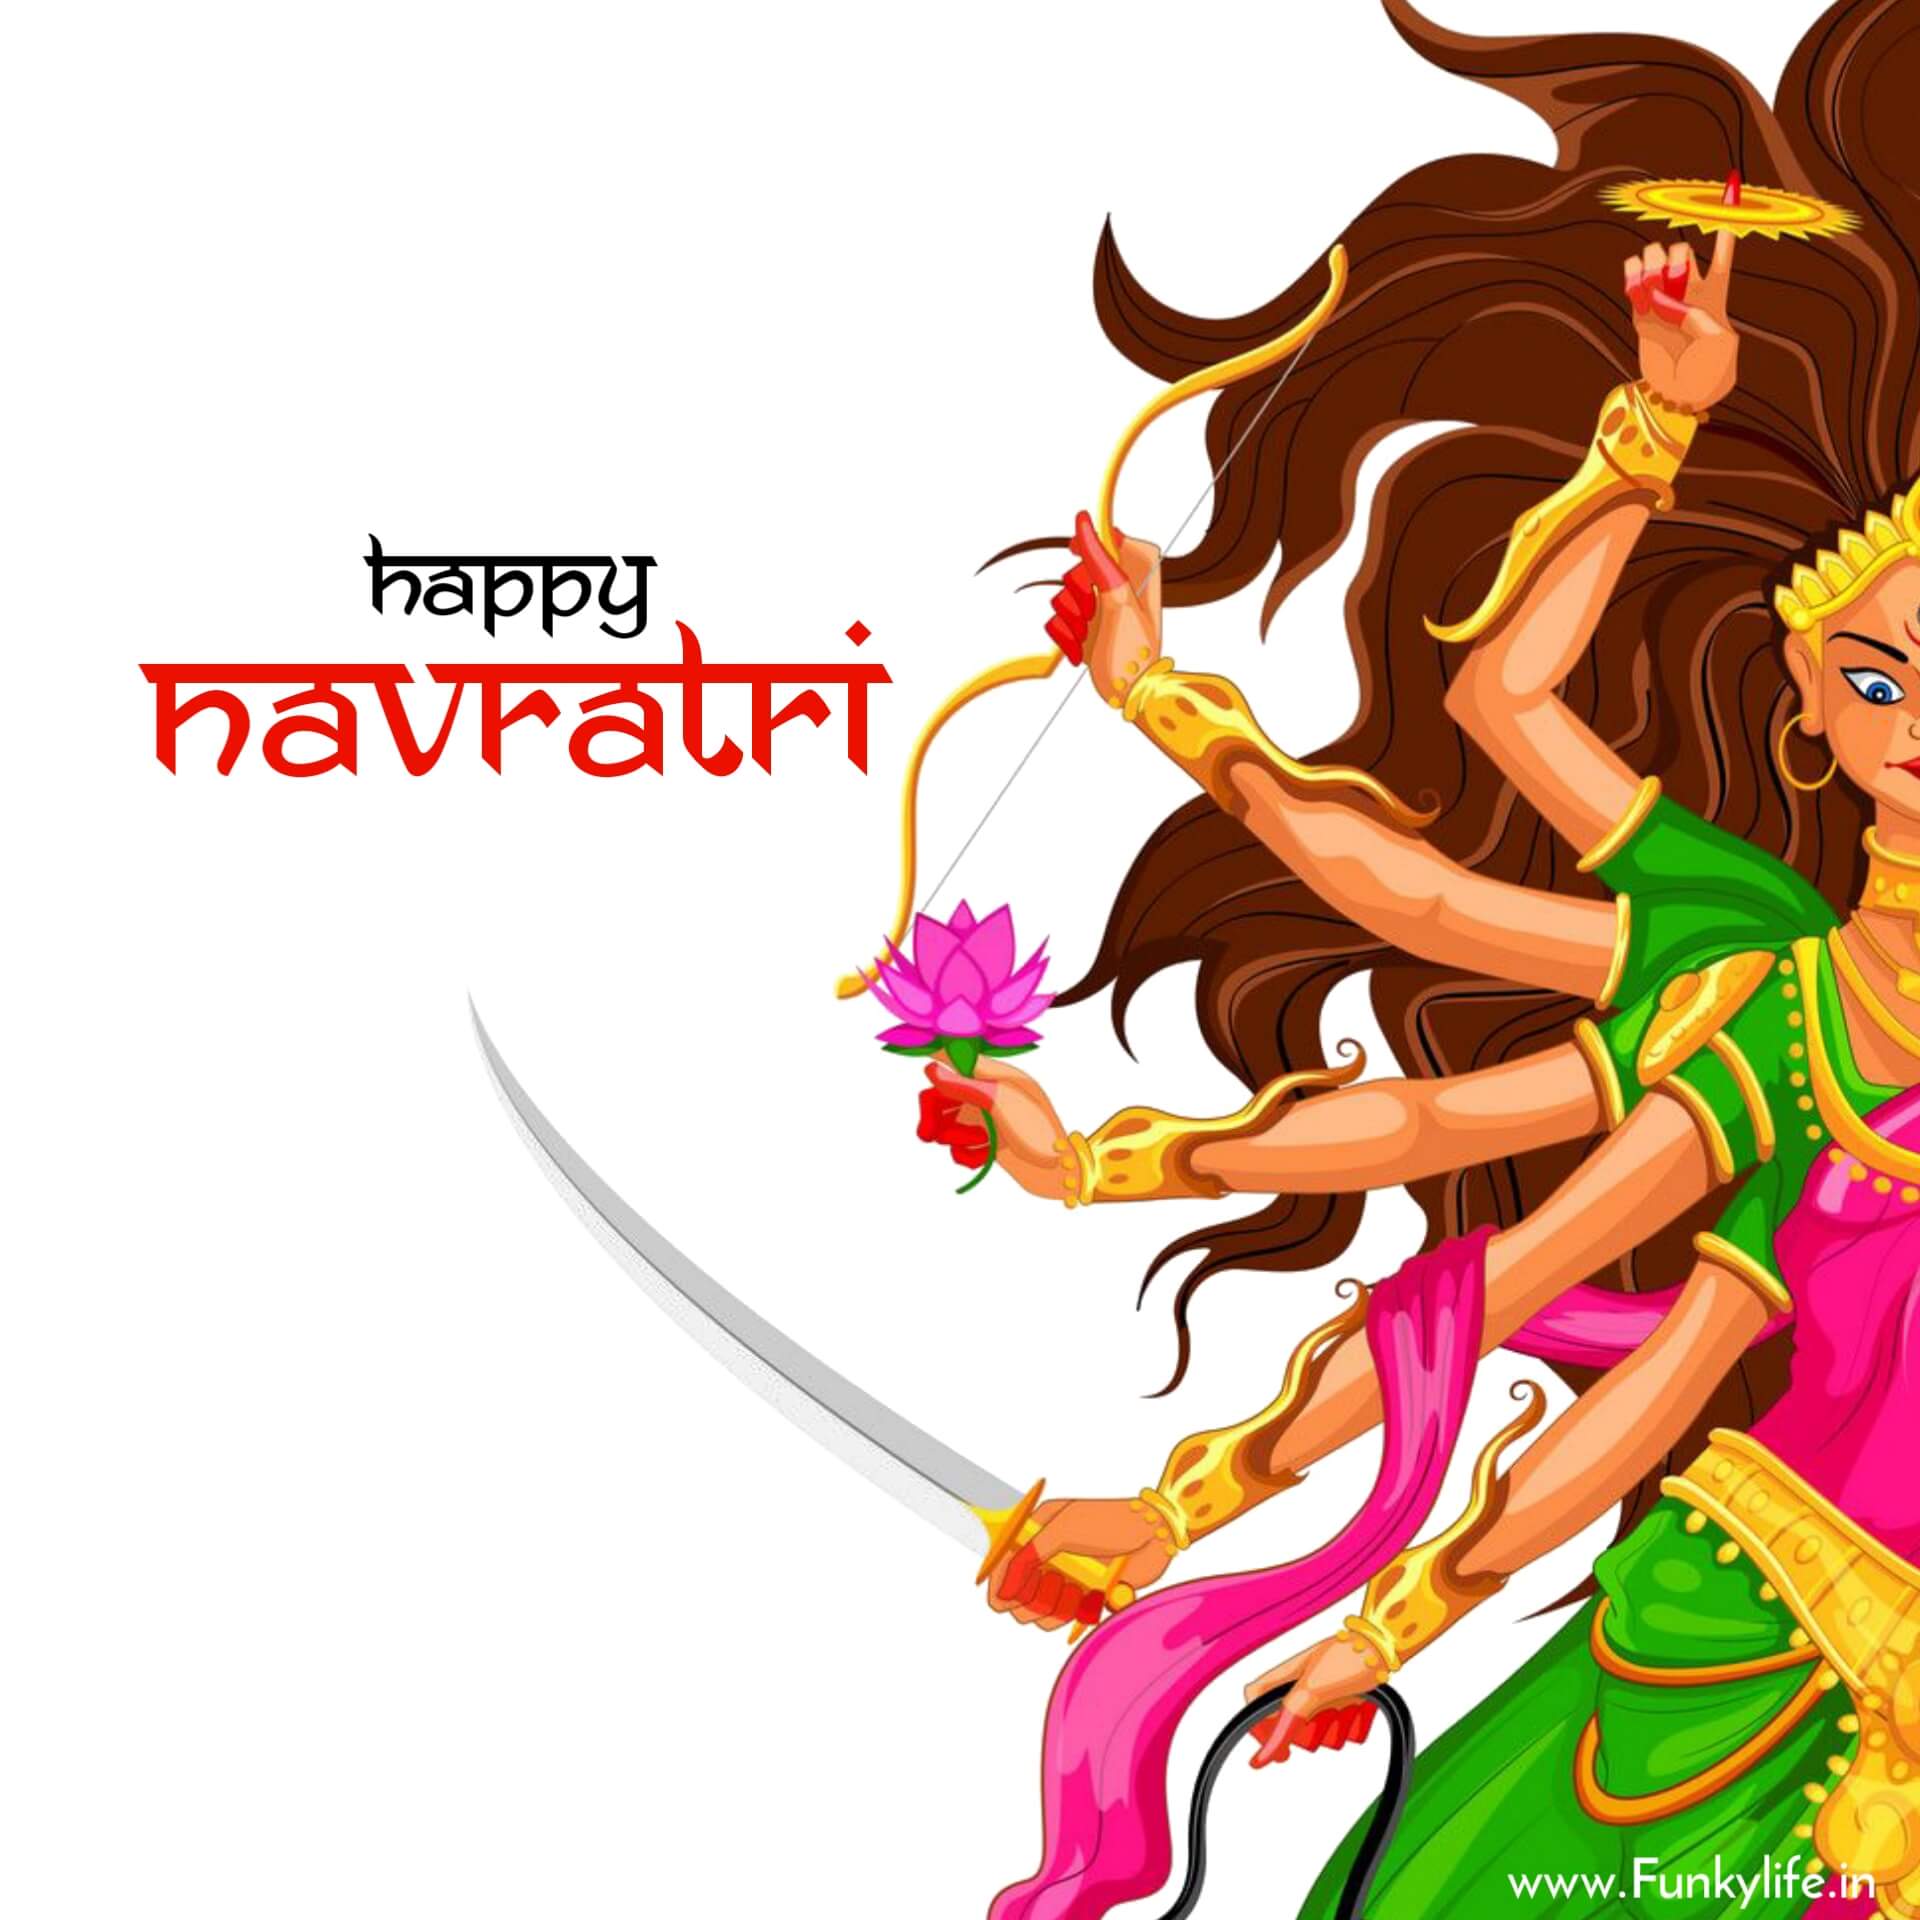 Gujrati Happy Navratri Images